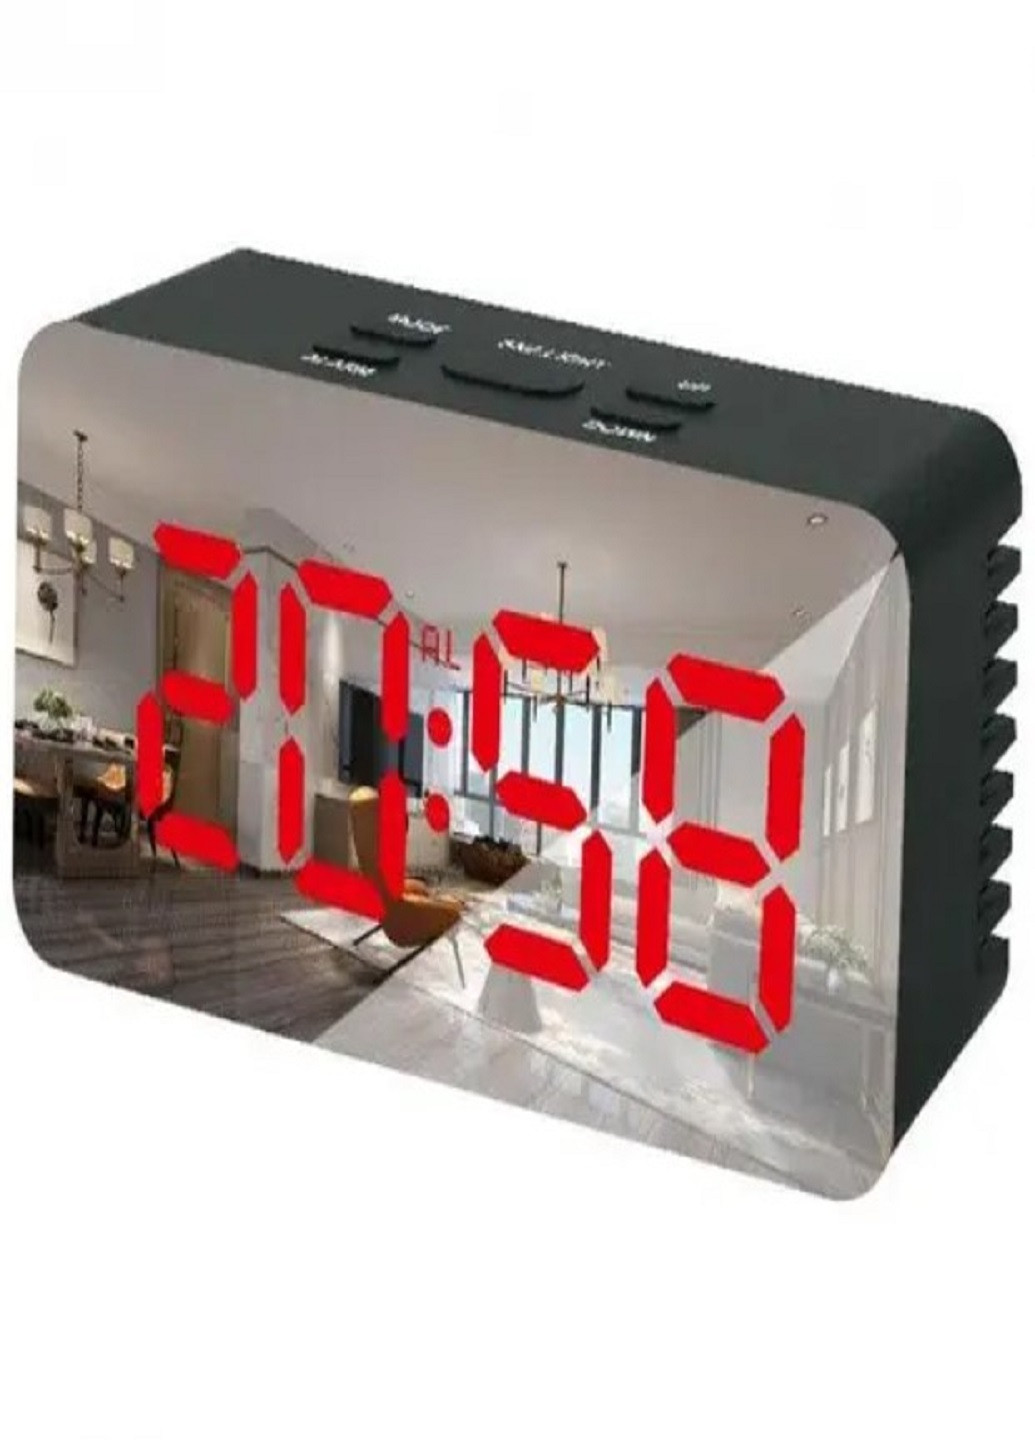 Настольные электронные часы с подсветкой и питанием от сети 220В или батареек DS-3658 Черный корпус Красная подсветка VTech (263360257)